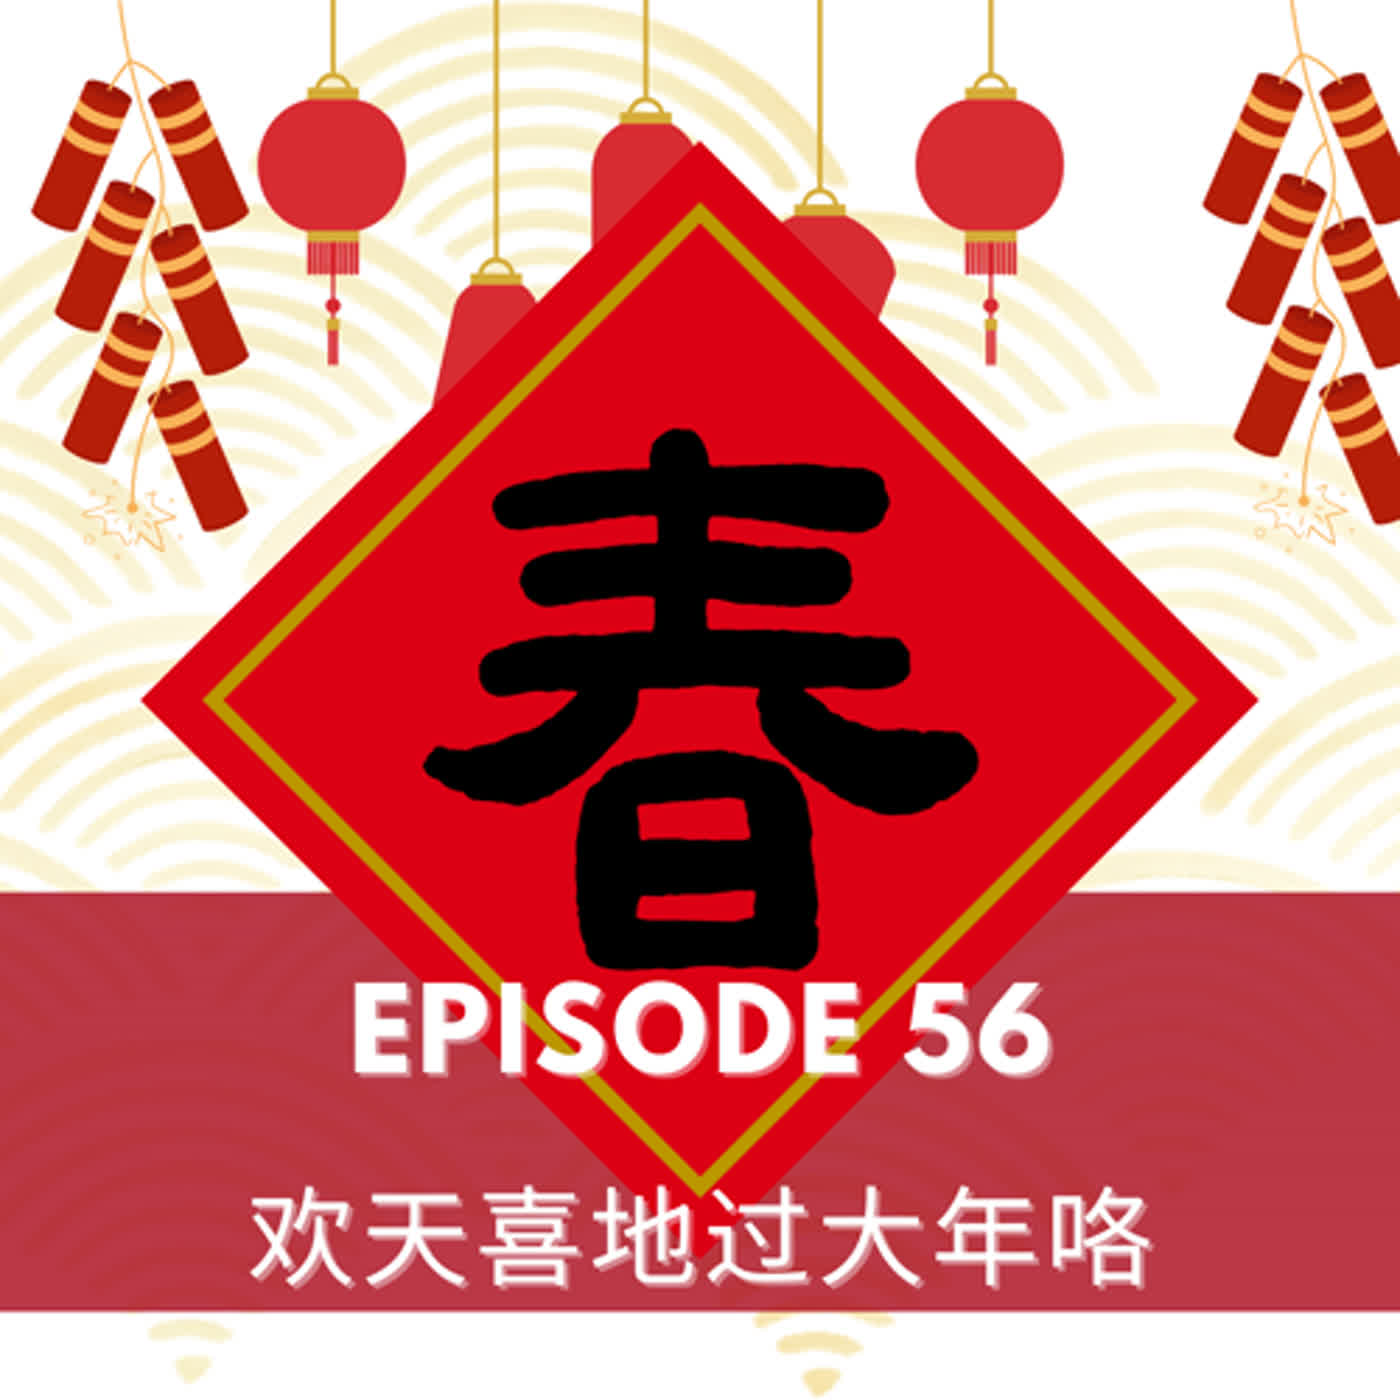 Episode 56 | 欢天喜地过大年咯  Happy Spring Festival!